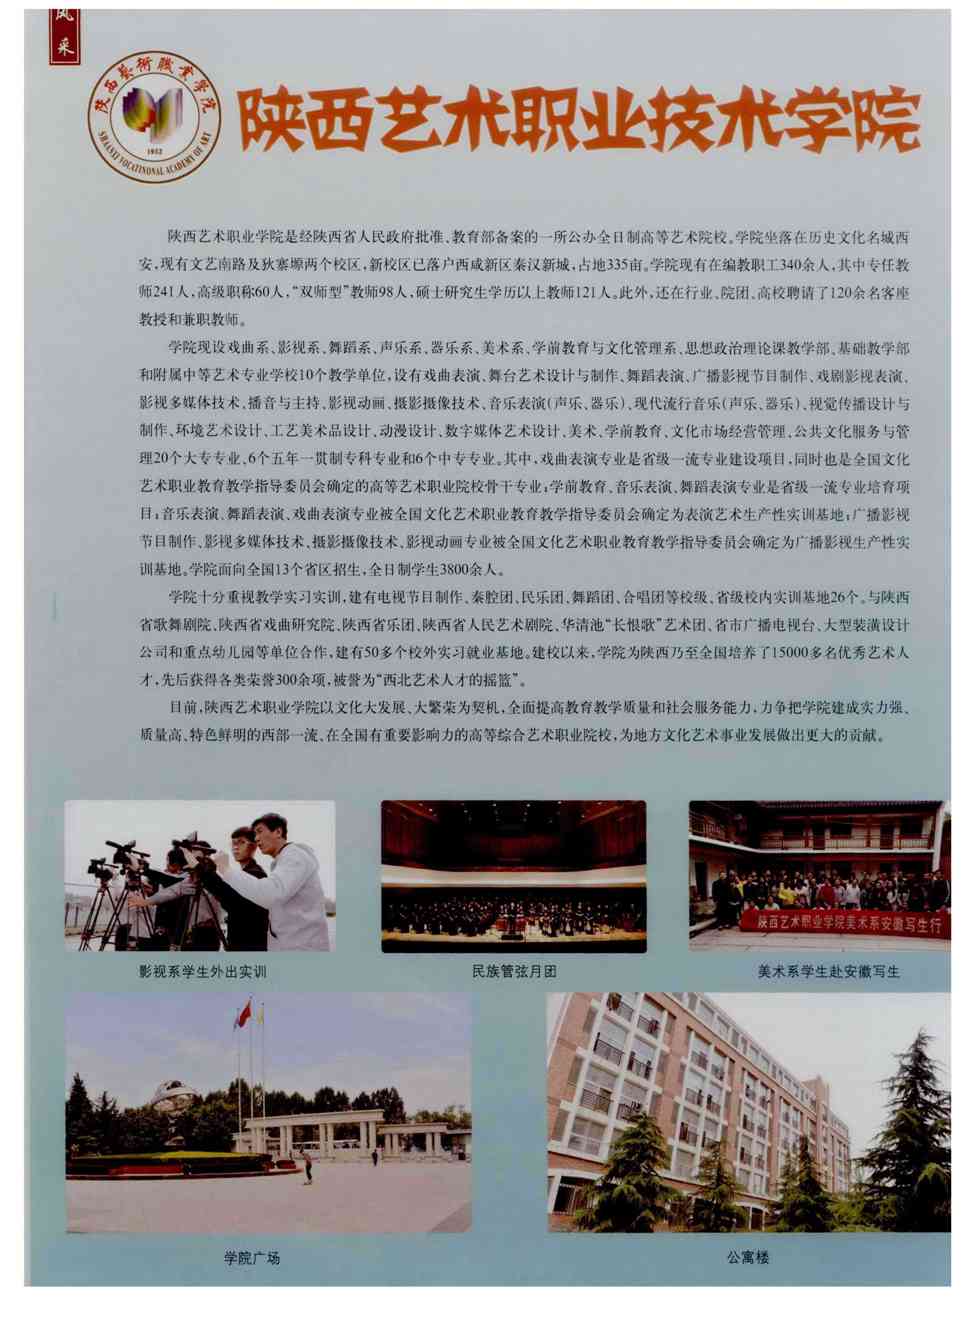 期刊陕西艺术职业学院 陕西艺术职业学院是经陕西省人民政府批准